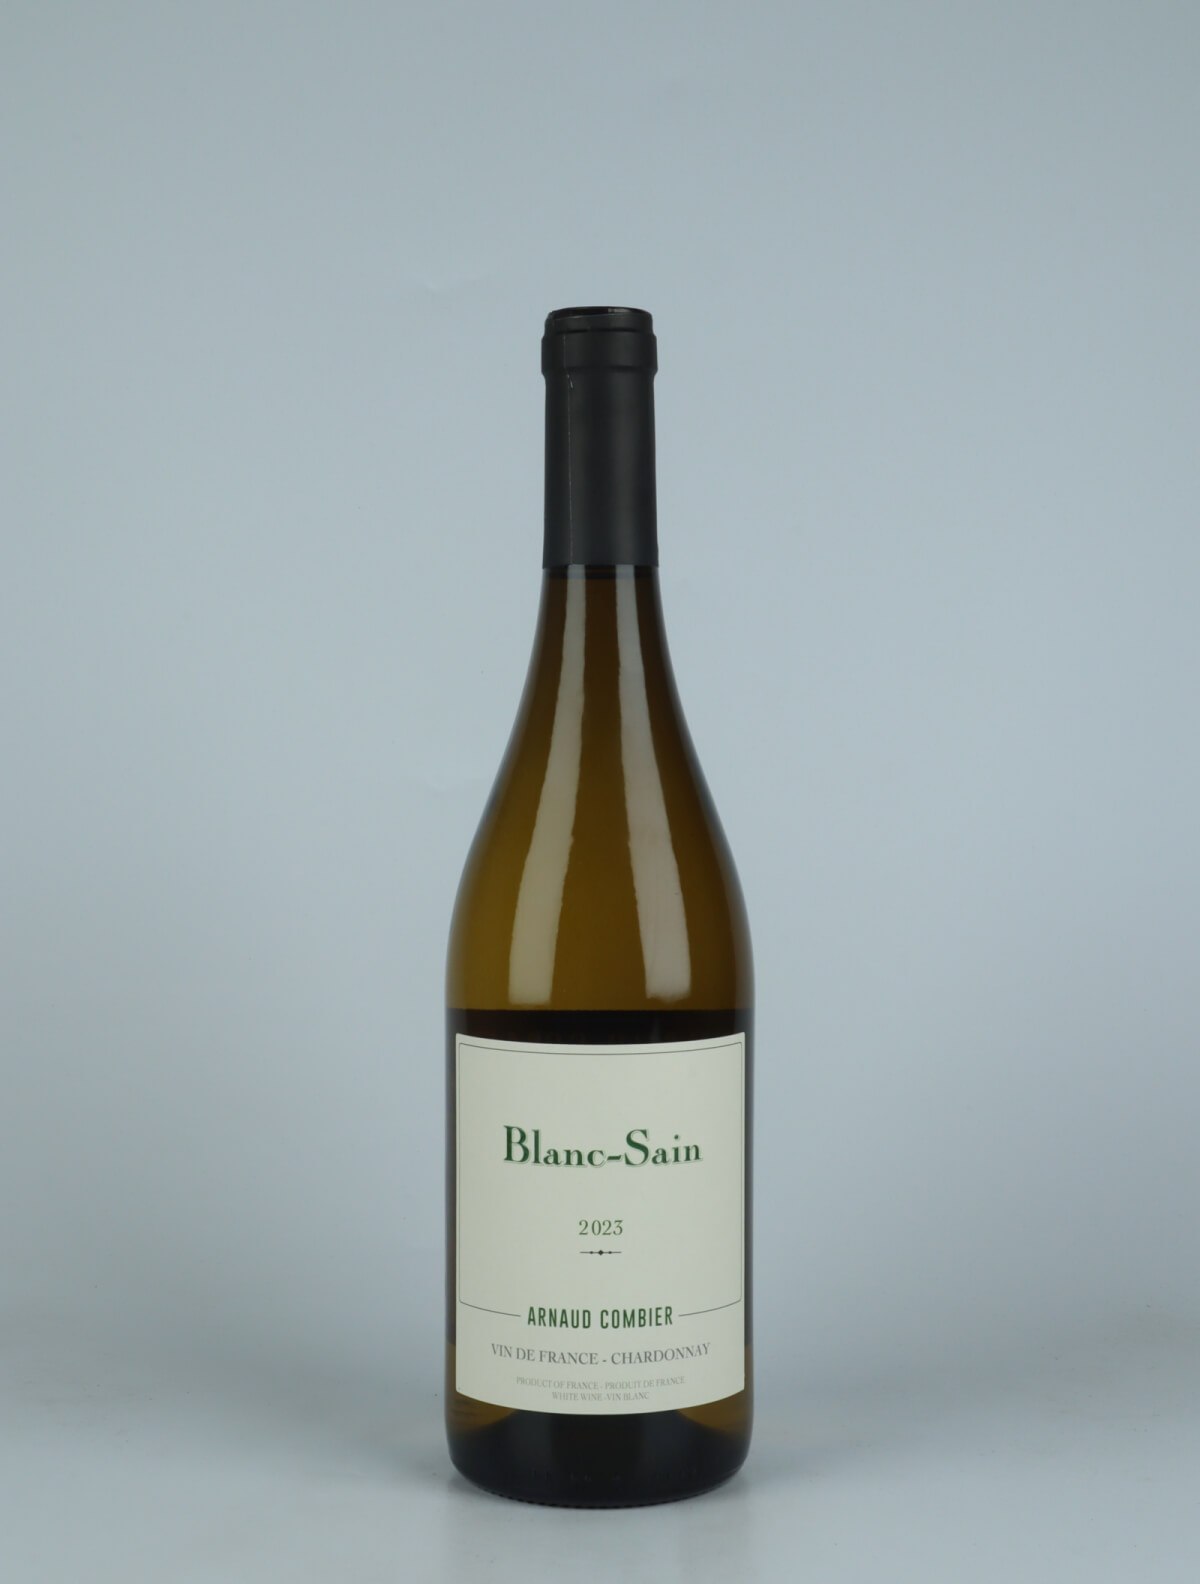 En flaske 2023 Blanc-Sain Hvidvin fra Arnaud Combier, Languedoc i Frankrig